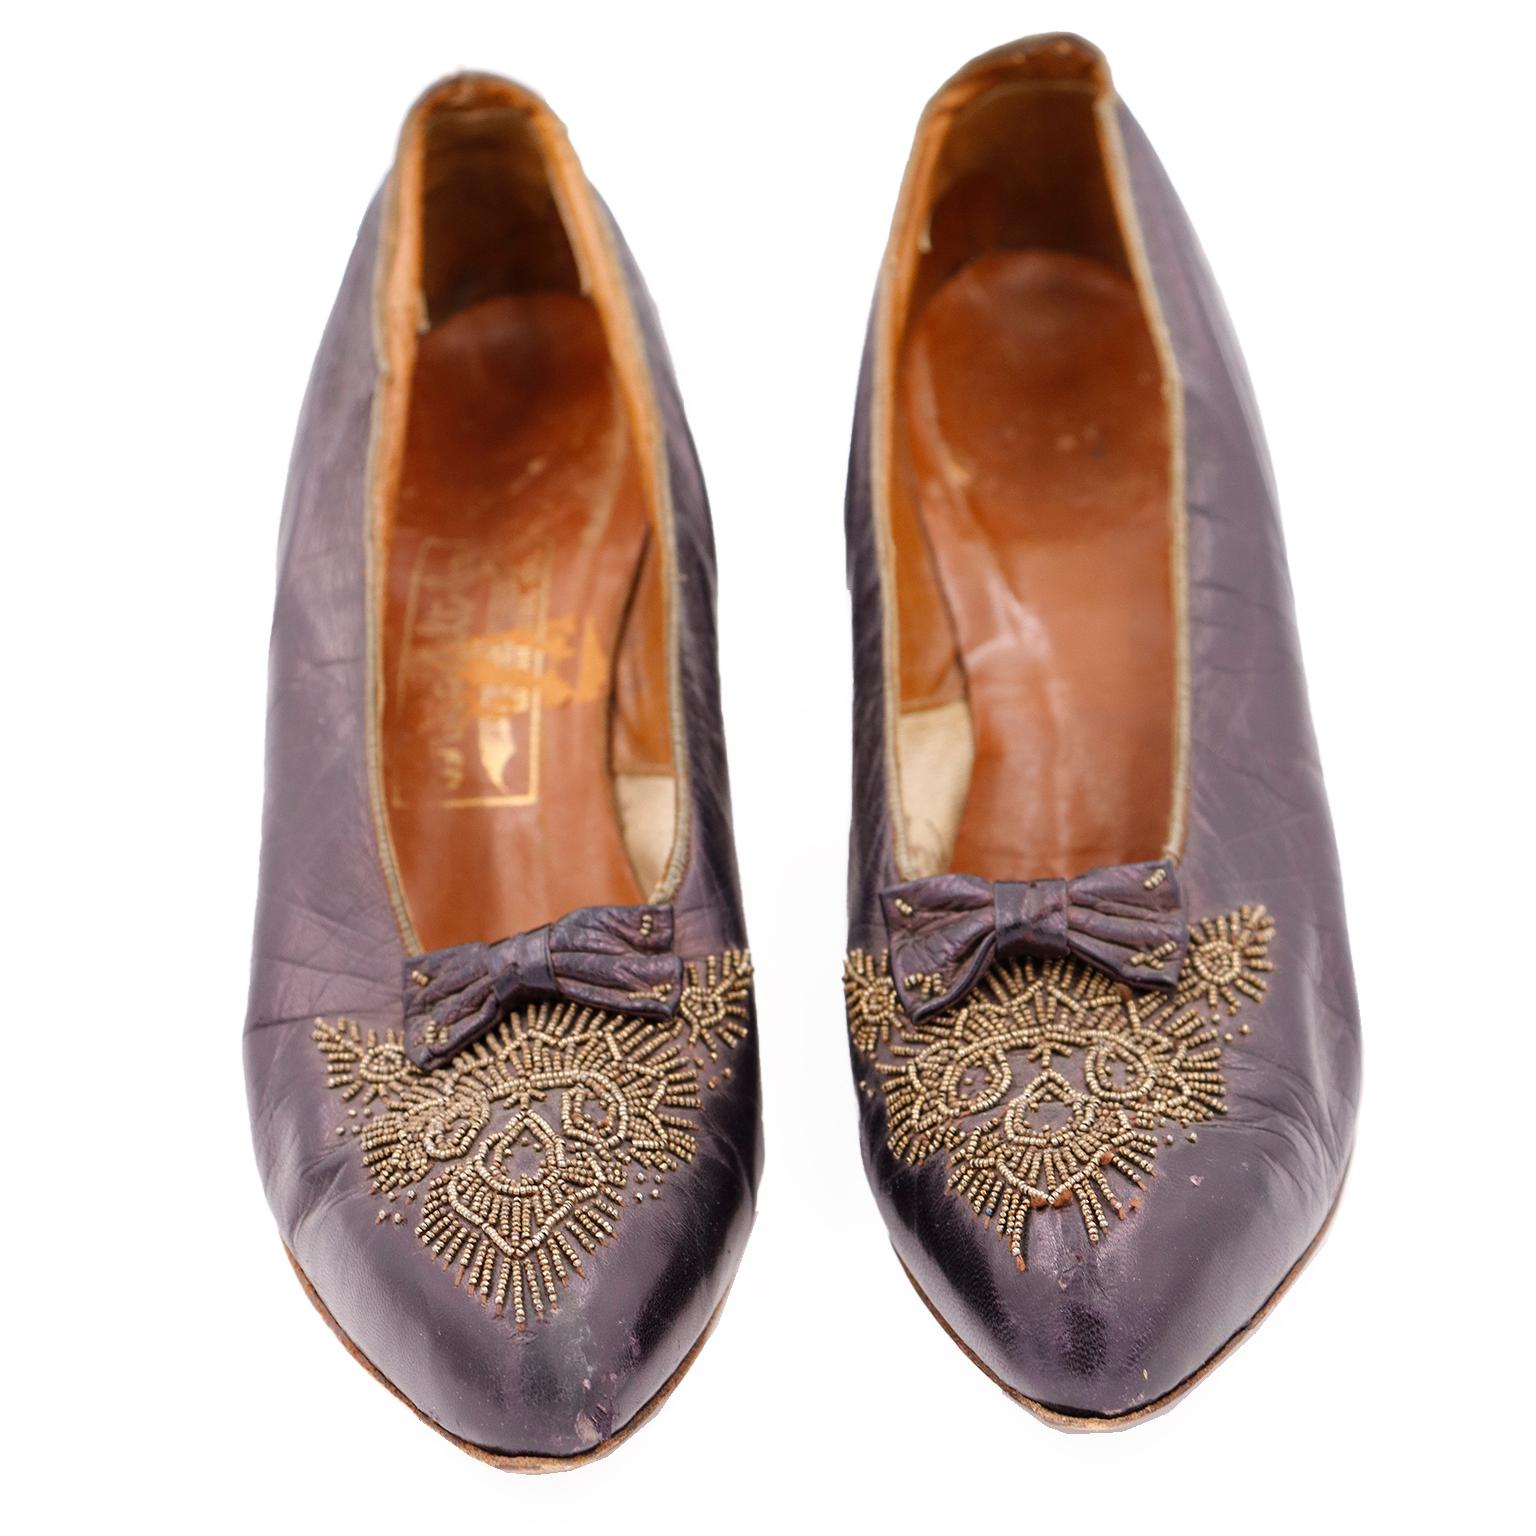 Dies ist ein seltenes Paar von Vintage 1910's lila Leder Perlen Schuhe von CH Wolfelt Co. The Bootery - Los Angeles, CAL.
Diese hübschen edwardianischen Absätze haben hübsche goldene Stahlperlen auf dem Vorderblatt und kleine Perlenschleifen. Die